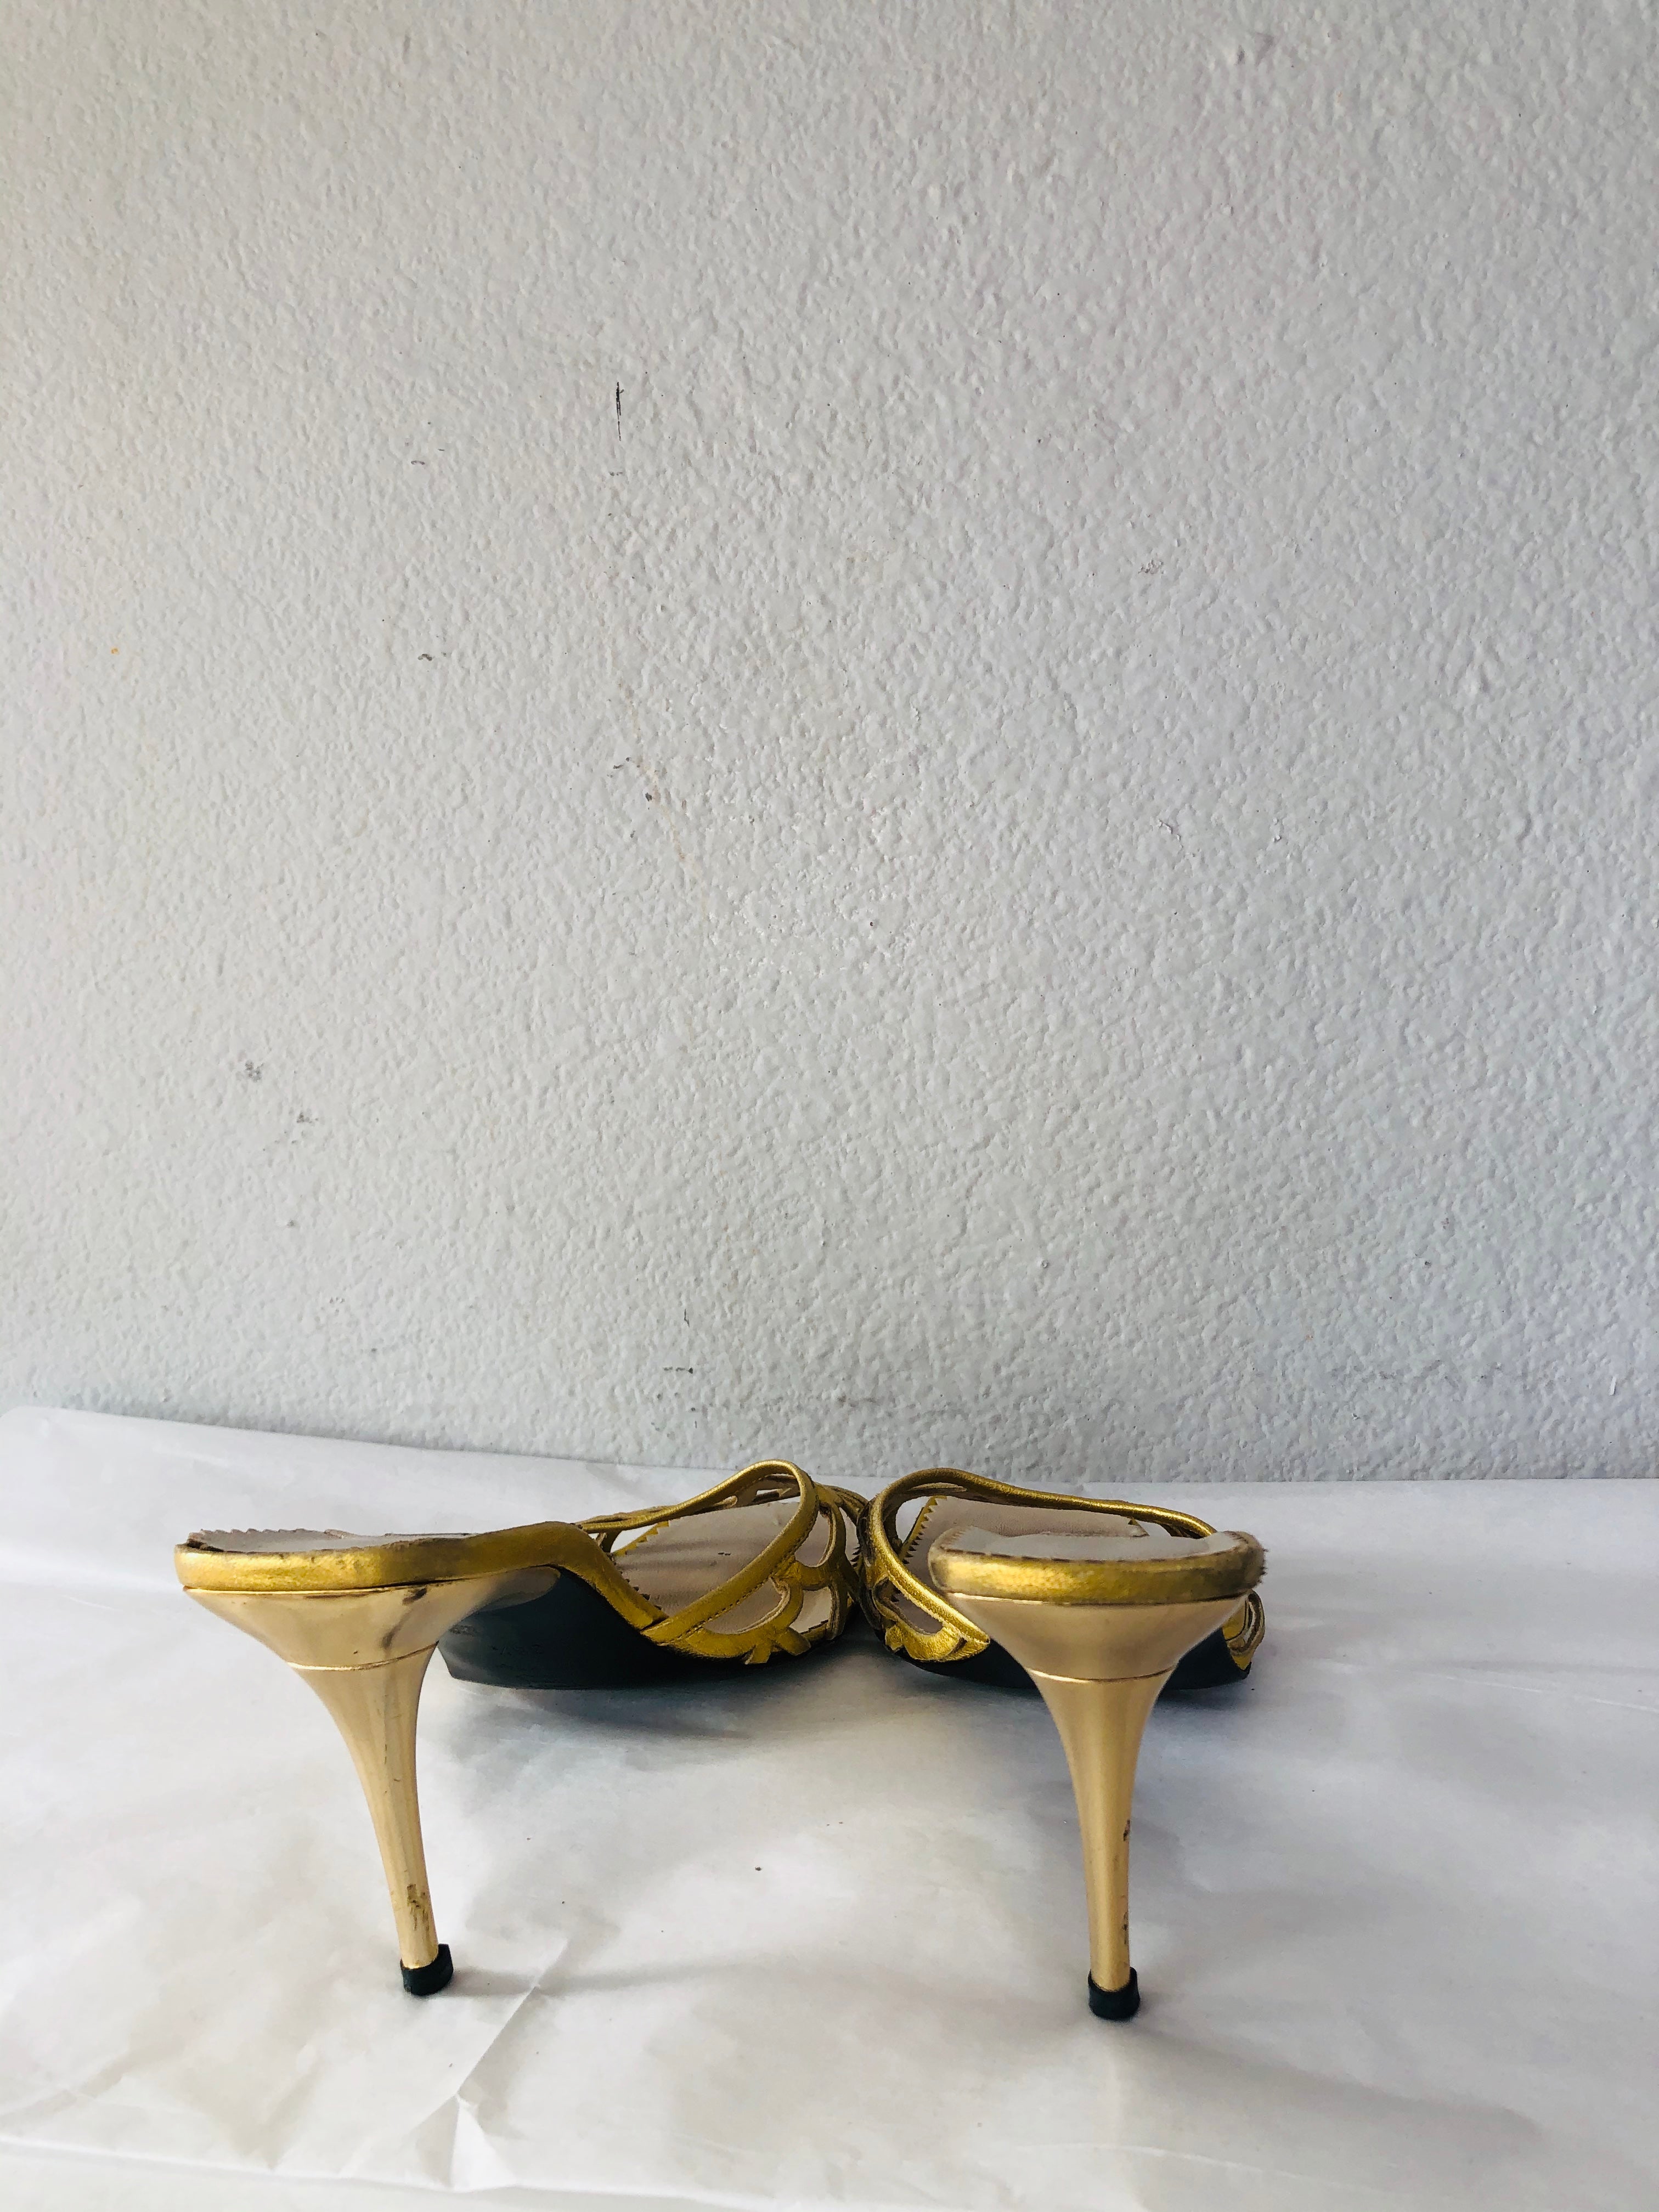 Moschino Heels - Vanity's Vault